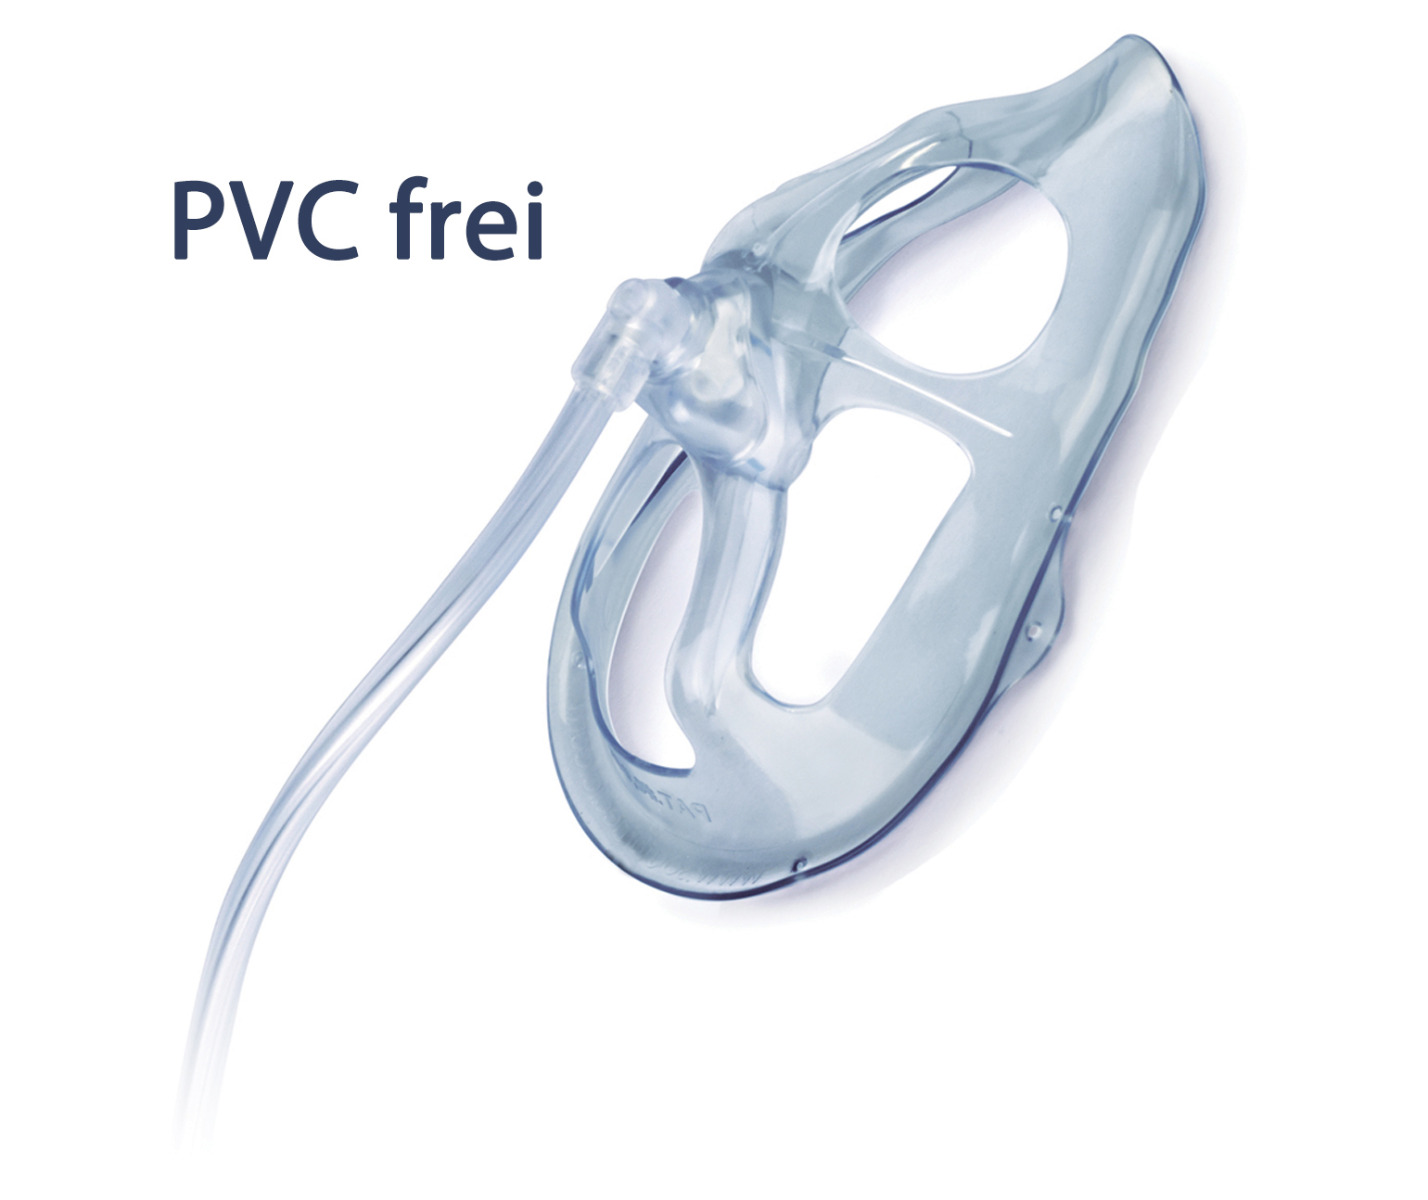 OxyPlus PVC frei (25% größer) - Sauerstoffmaske  mit extra großen Öffnungen